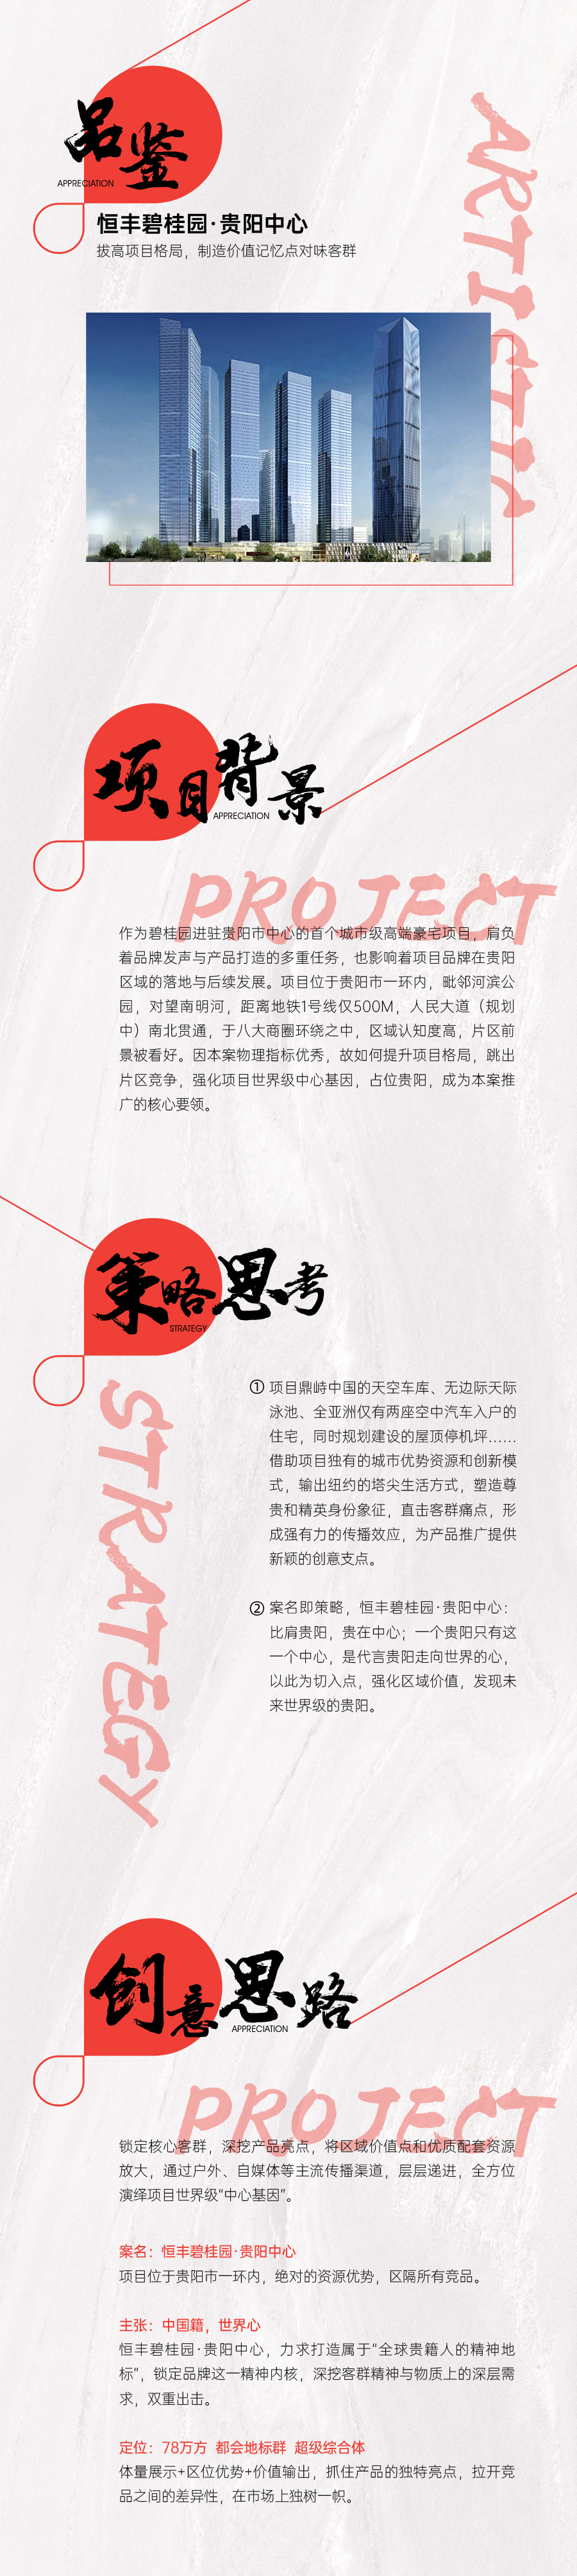 『恒丰碧桂园·贵阳中心』地产综合体 品牌包装 品牌VI设计图0